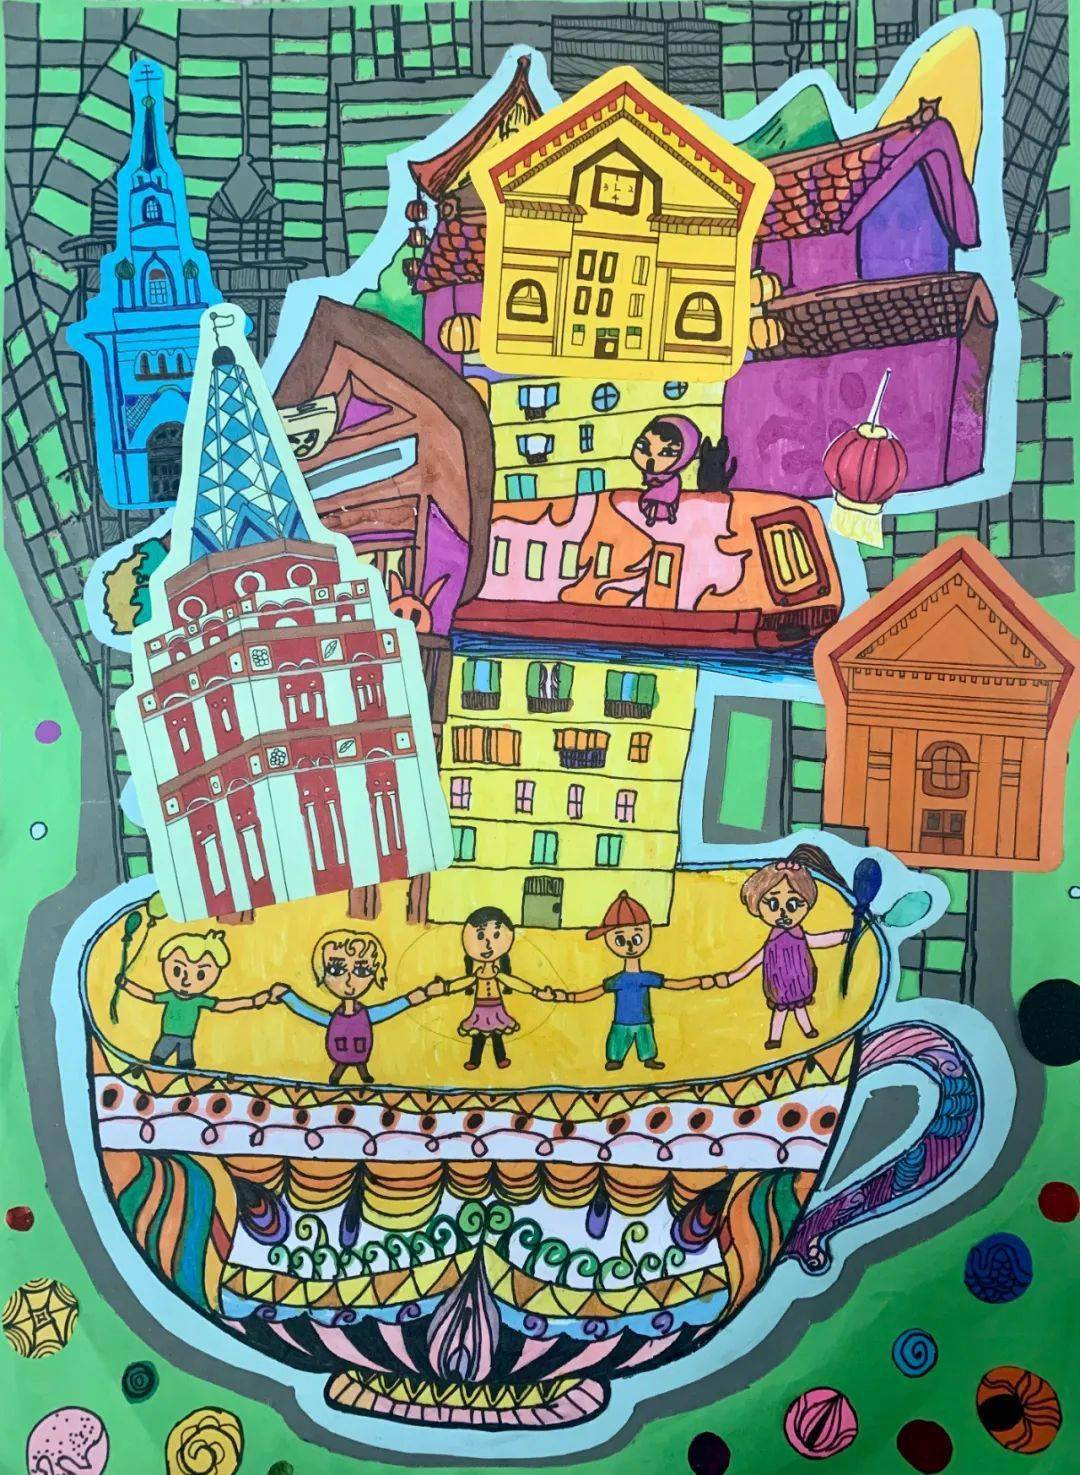 成都儿童画笔下的索契——"儿童眼中的友好合作关系城市"中俄儿童美术